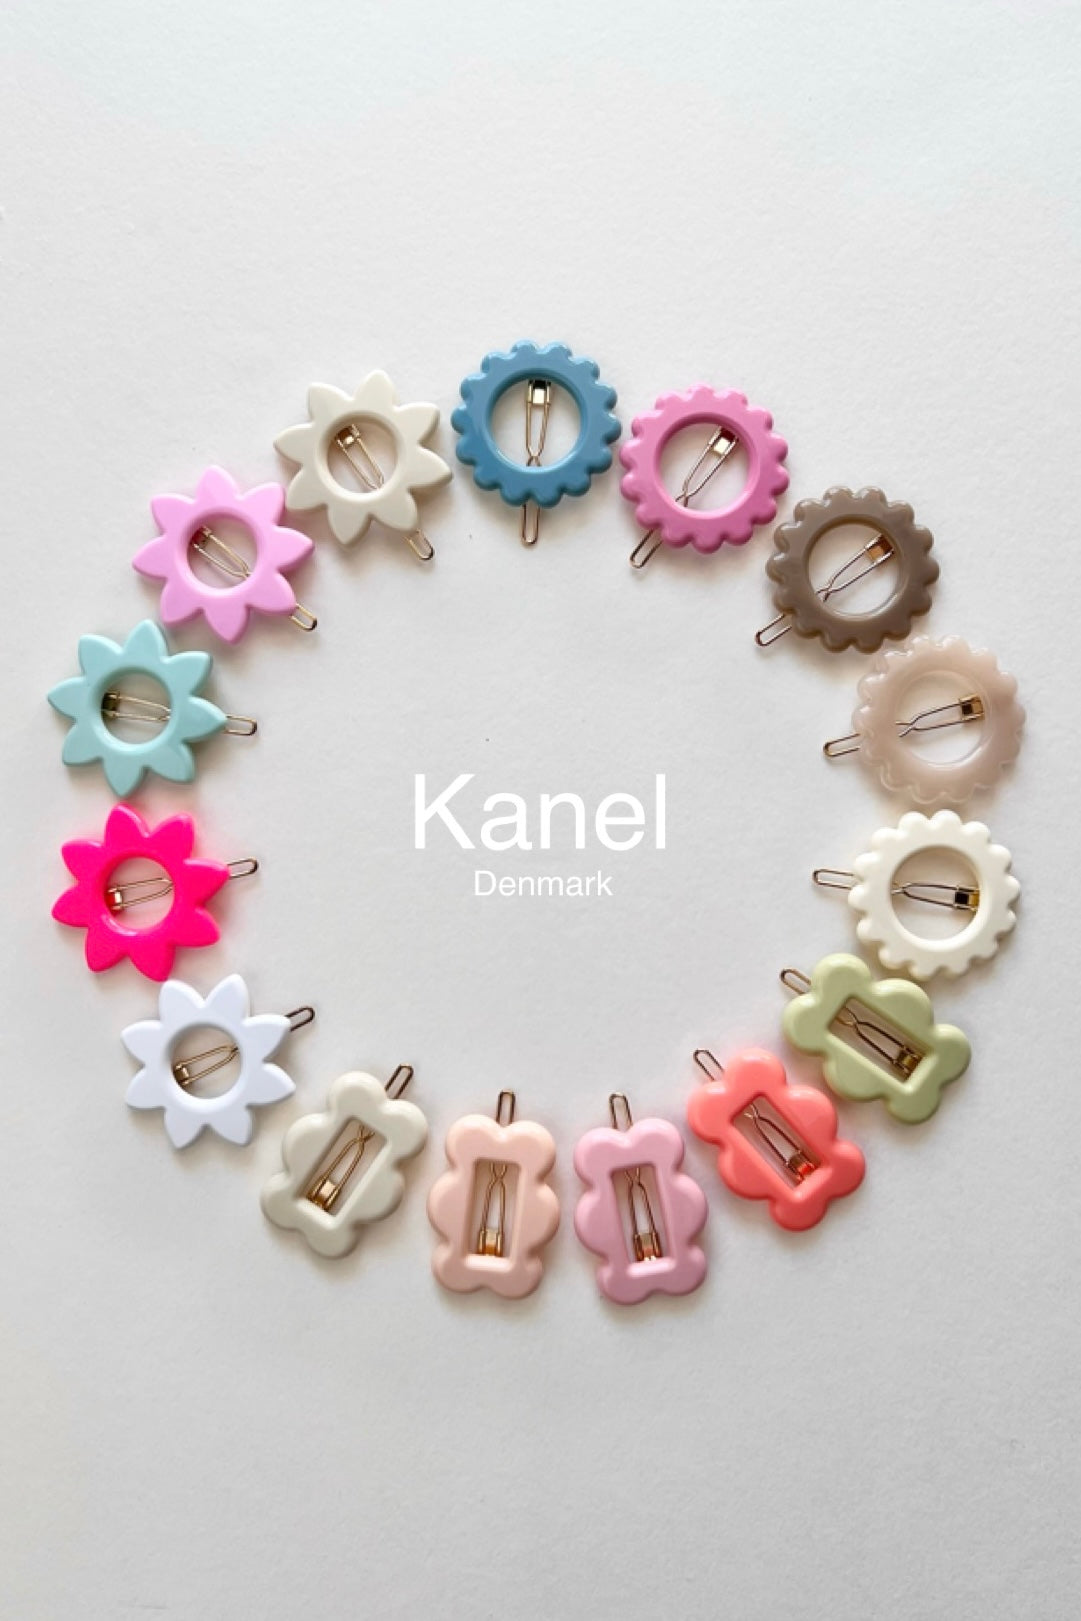 kanel / カネル ヘアクリップ ヘアピン デンマーク製 お花 フラワー 